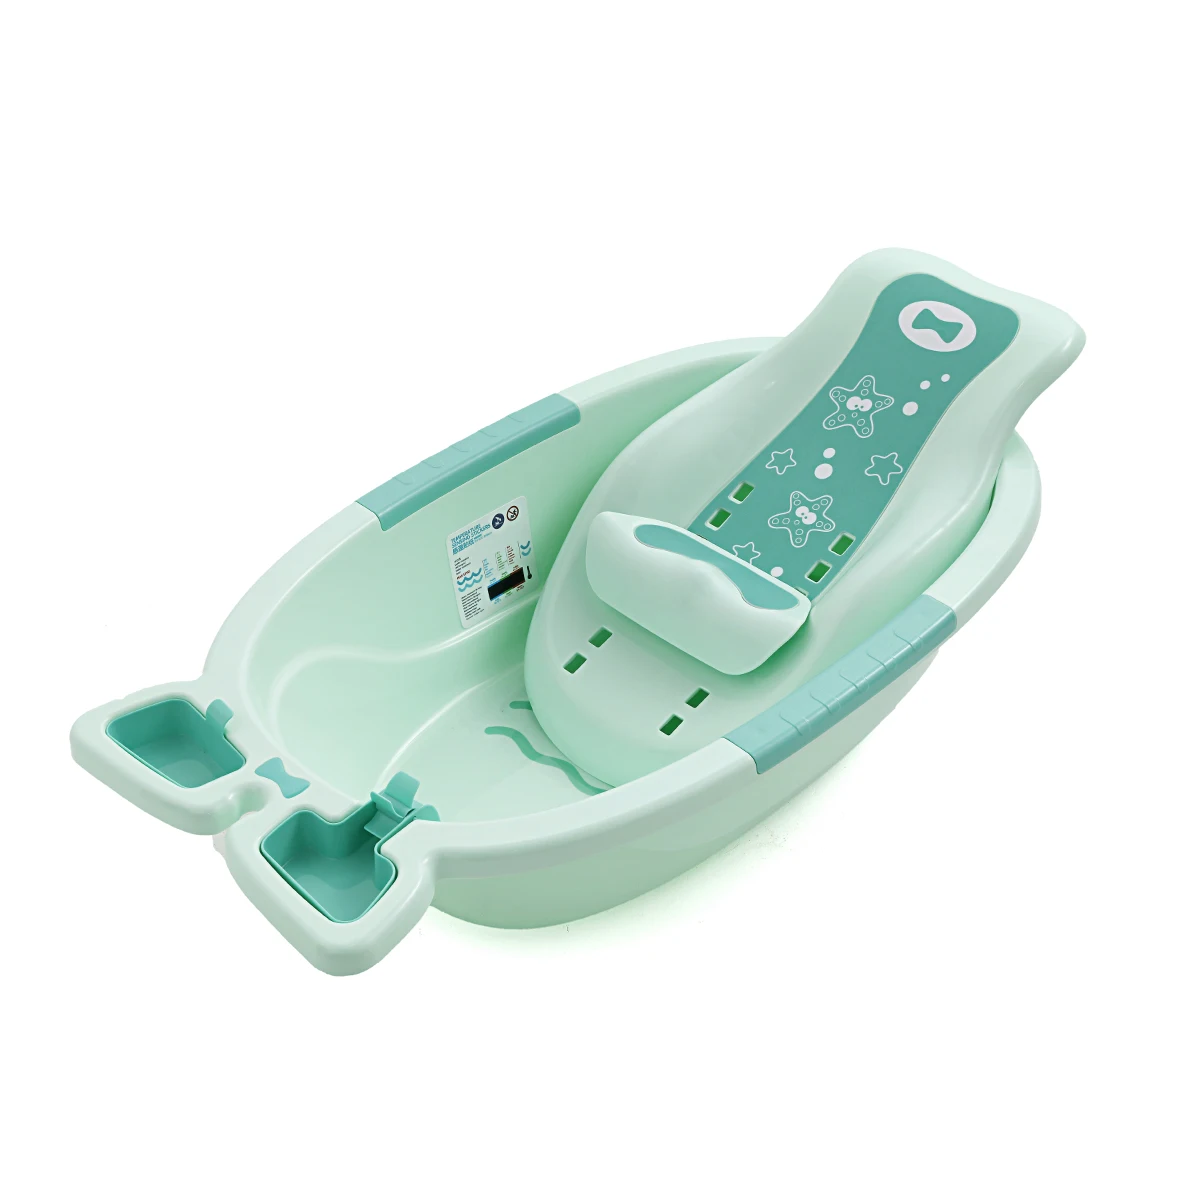 New Born Portable Plastic Baby Bath Tub With Bath Chair Buy Newborn Baby Bath Tub